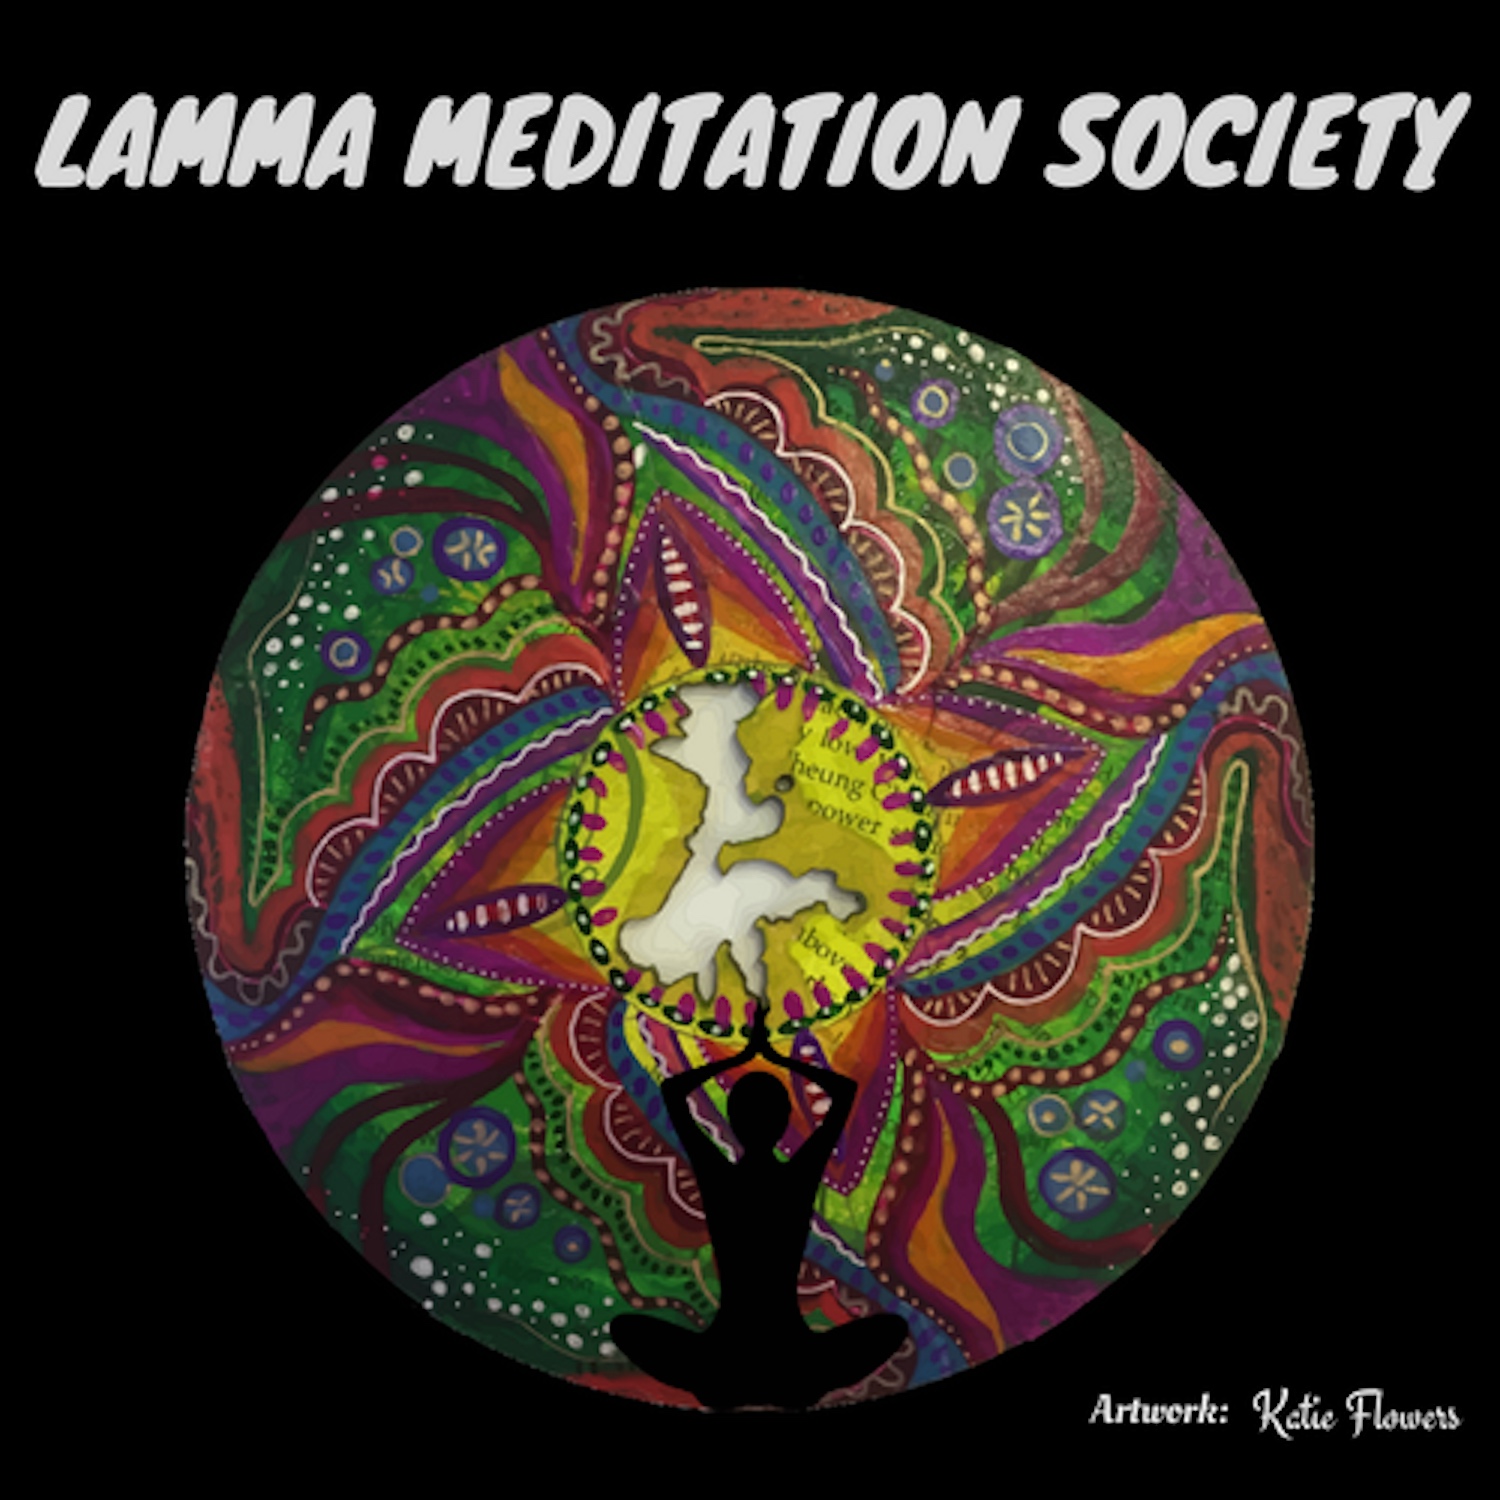 The Lamma Meditation Society